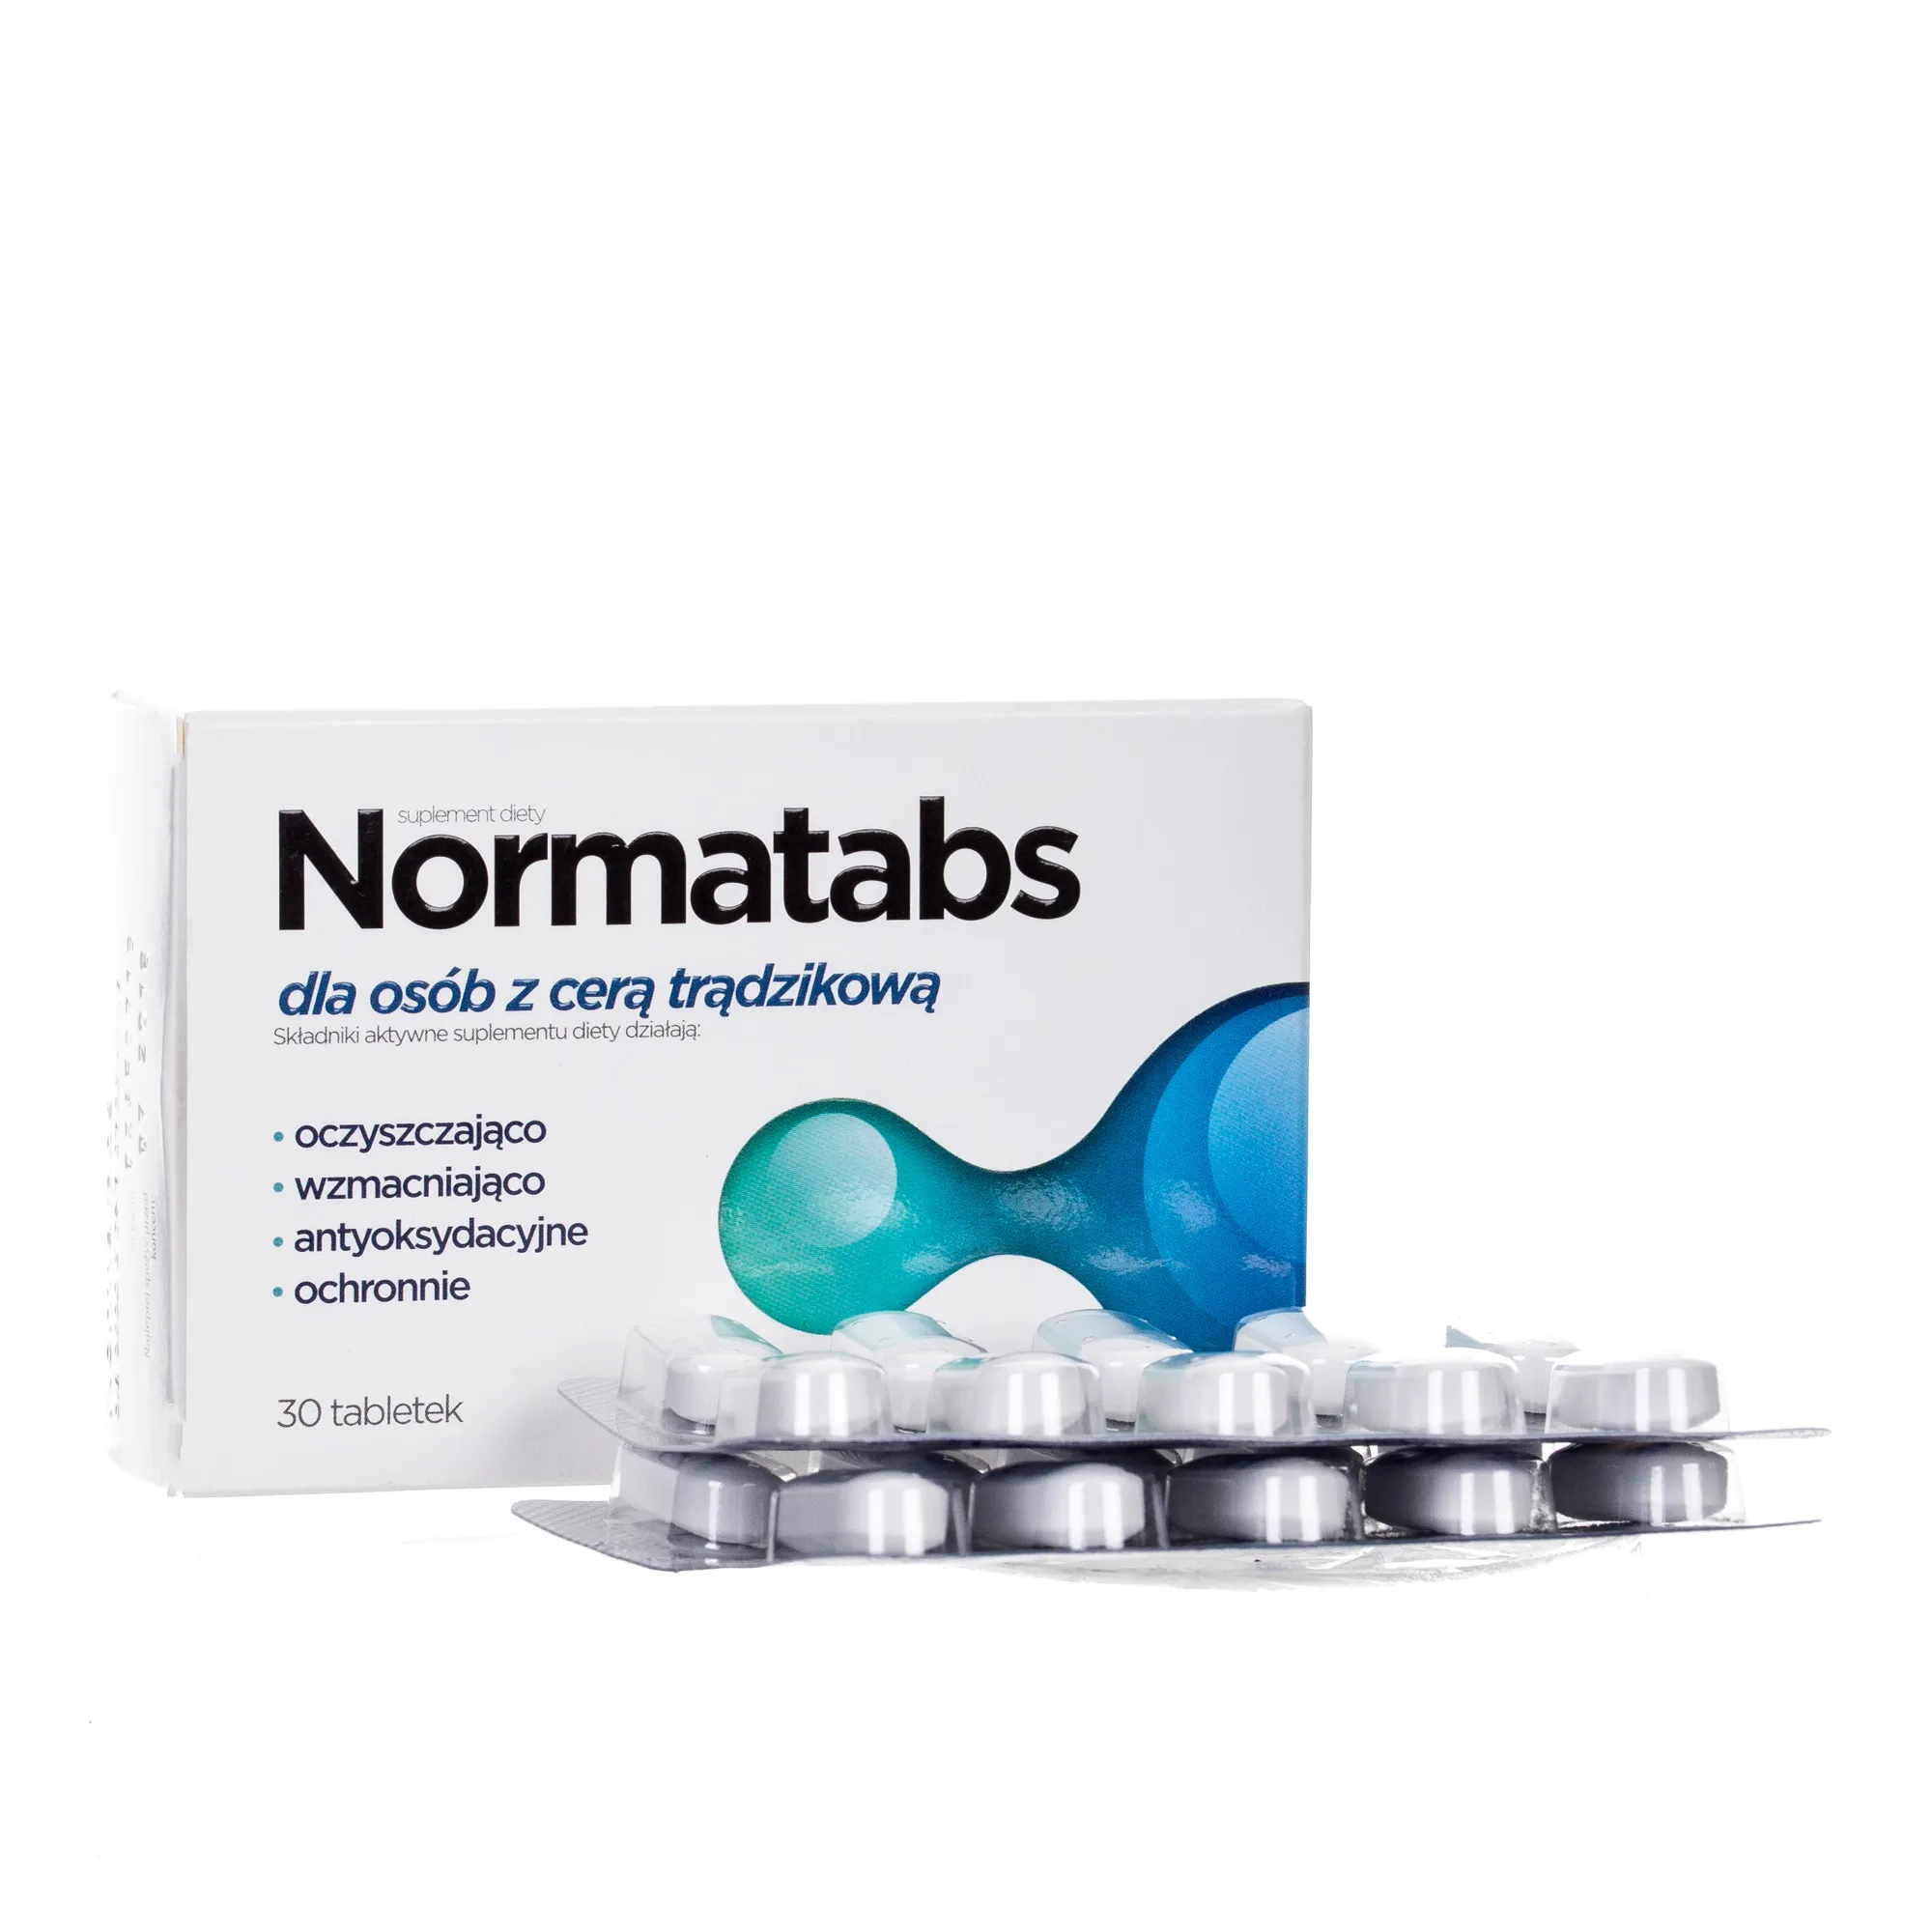 Normatabs suplement diety dla osób z cerą trądzikową, 30 tabletek.